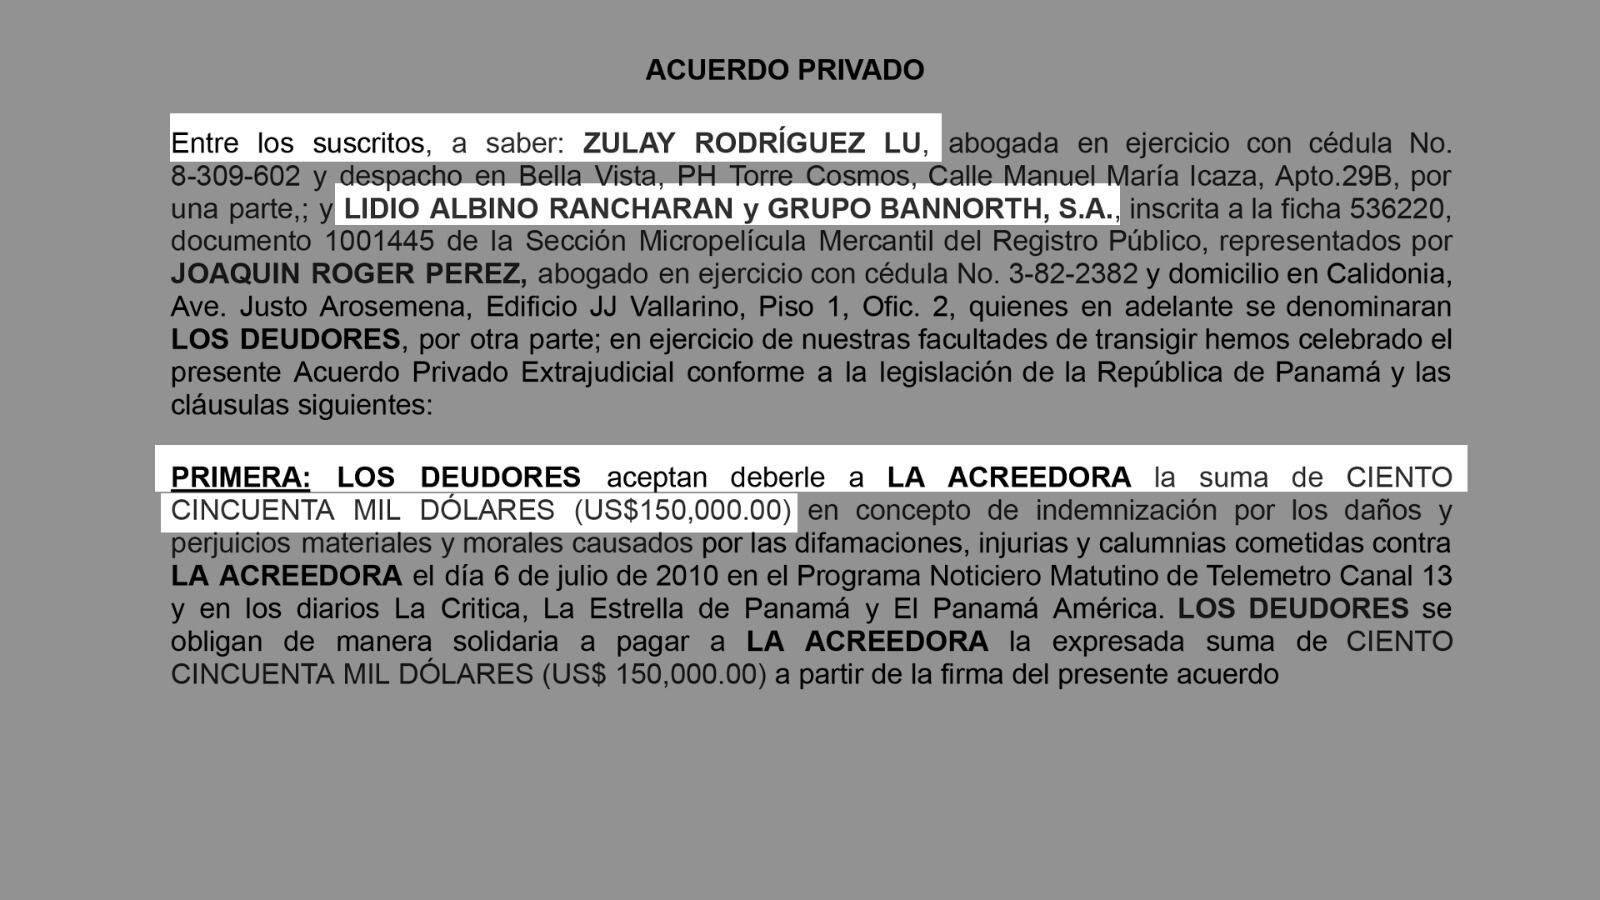 Acuerdo privado entre Zulay Rodríguez y Lidio Rancharán.